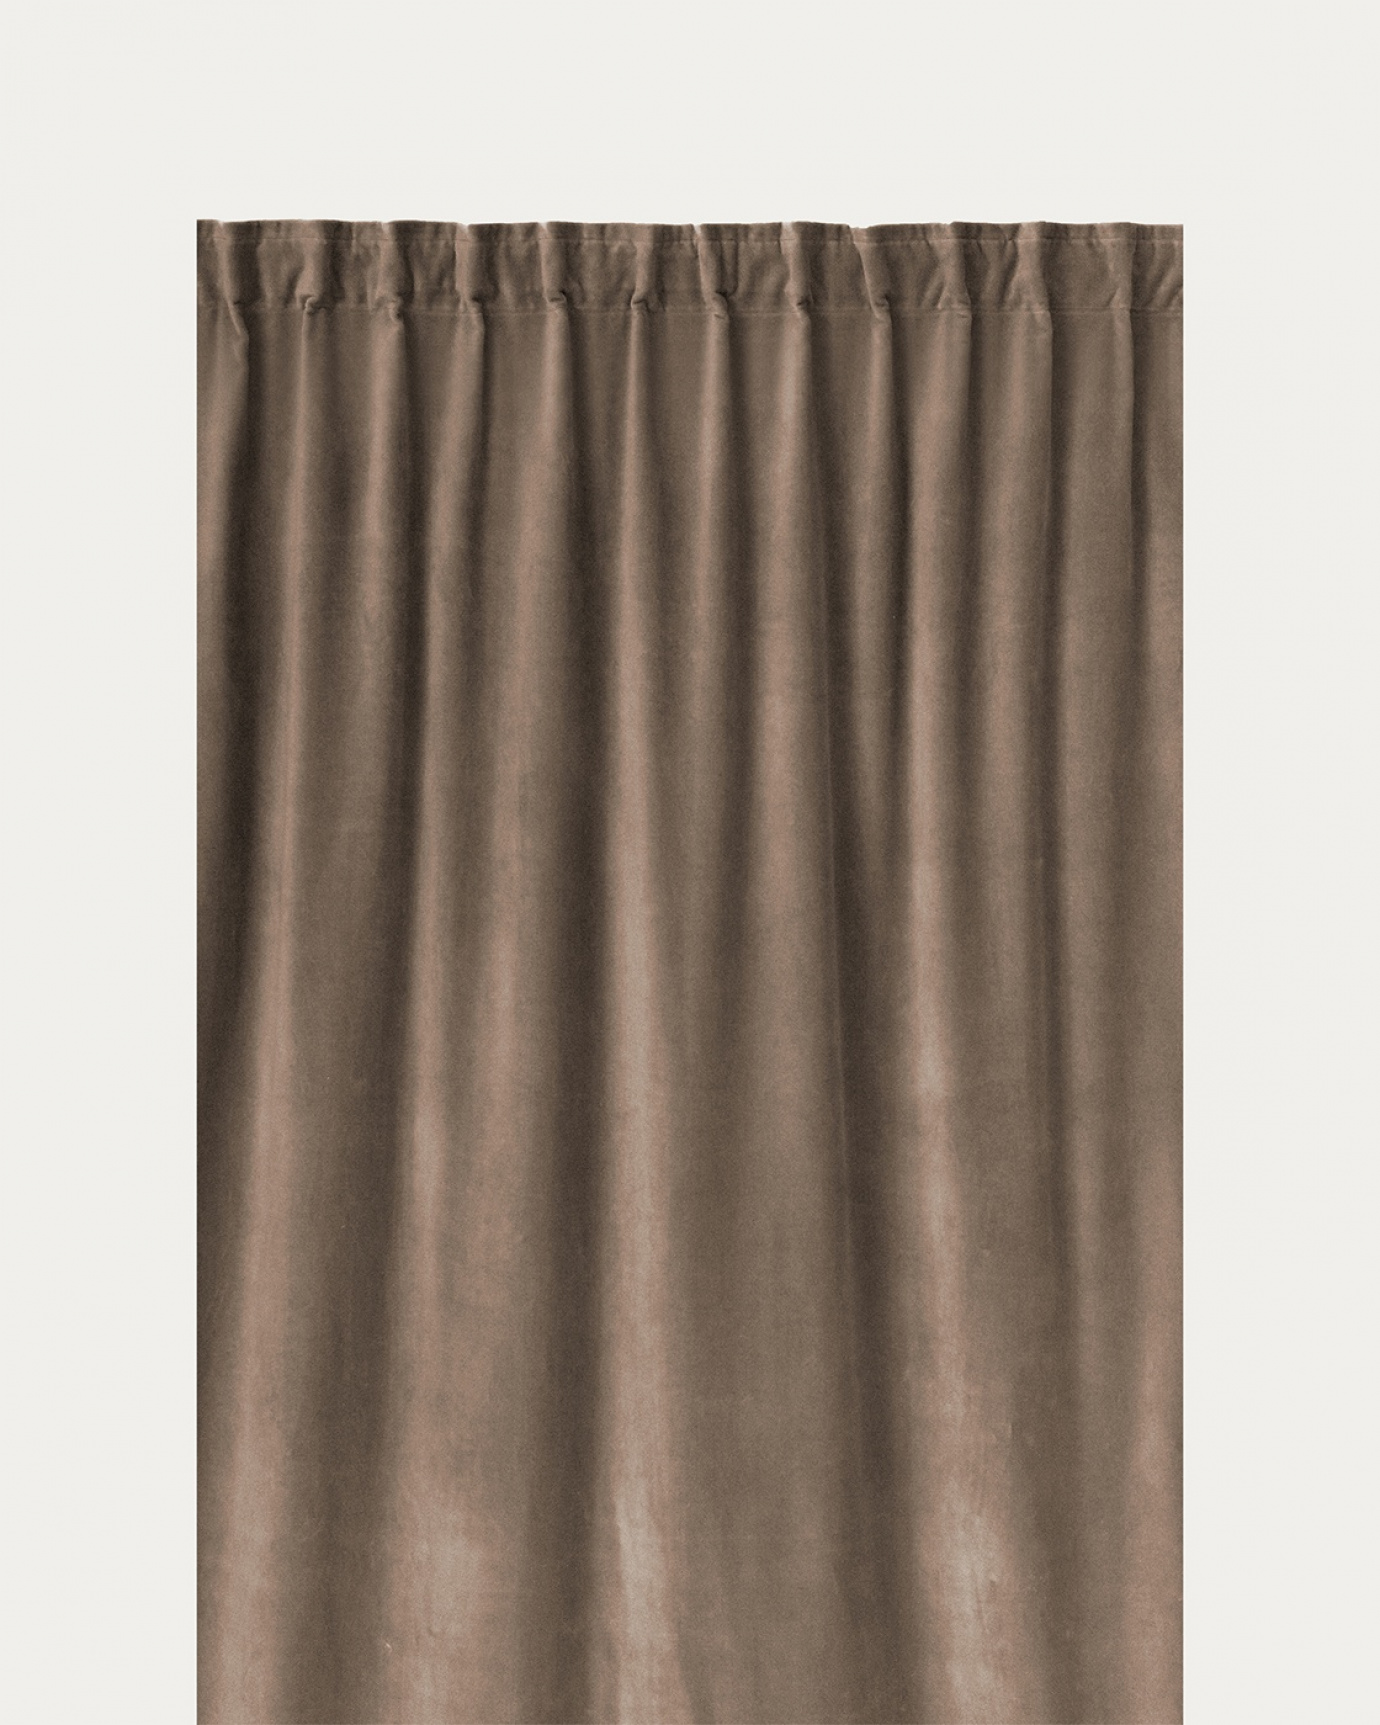 Produktbild maulwurfbraun PAOLO Gardine aus Baumwollsamt mit Fertigfalten von LINUM DESIGN. Größe 135x290 cm und in 2er-Pack verkauft.